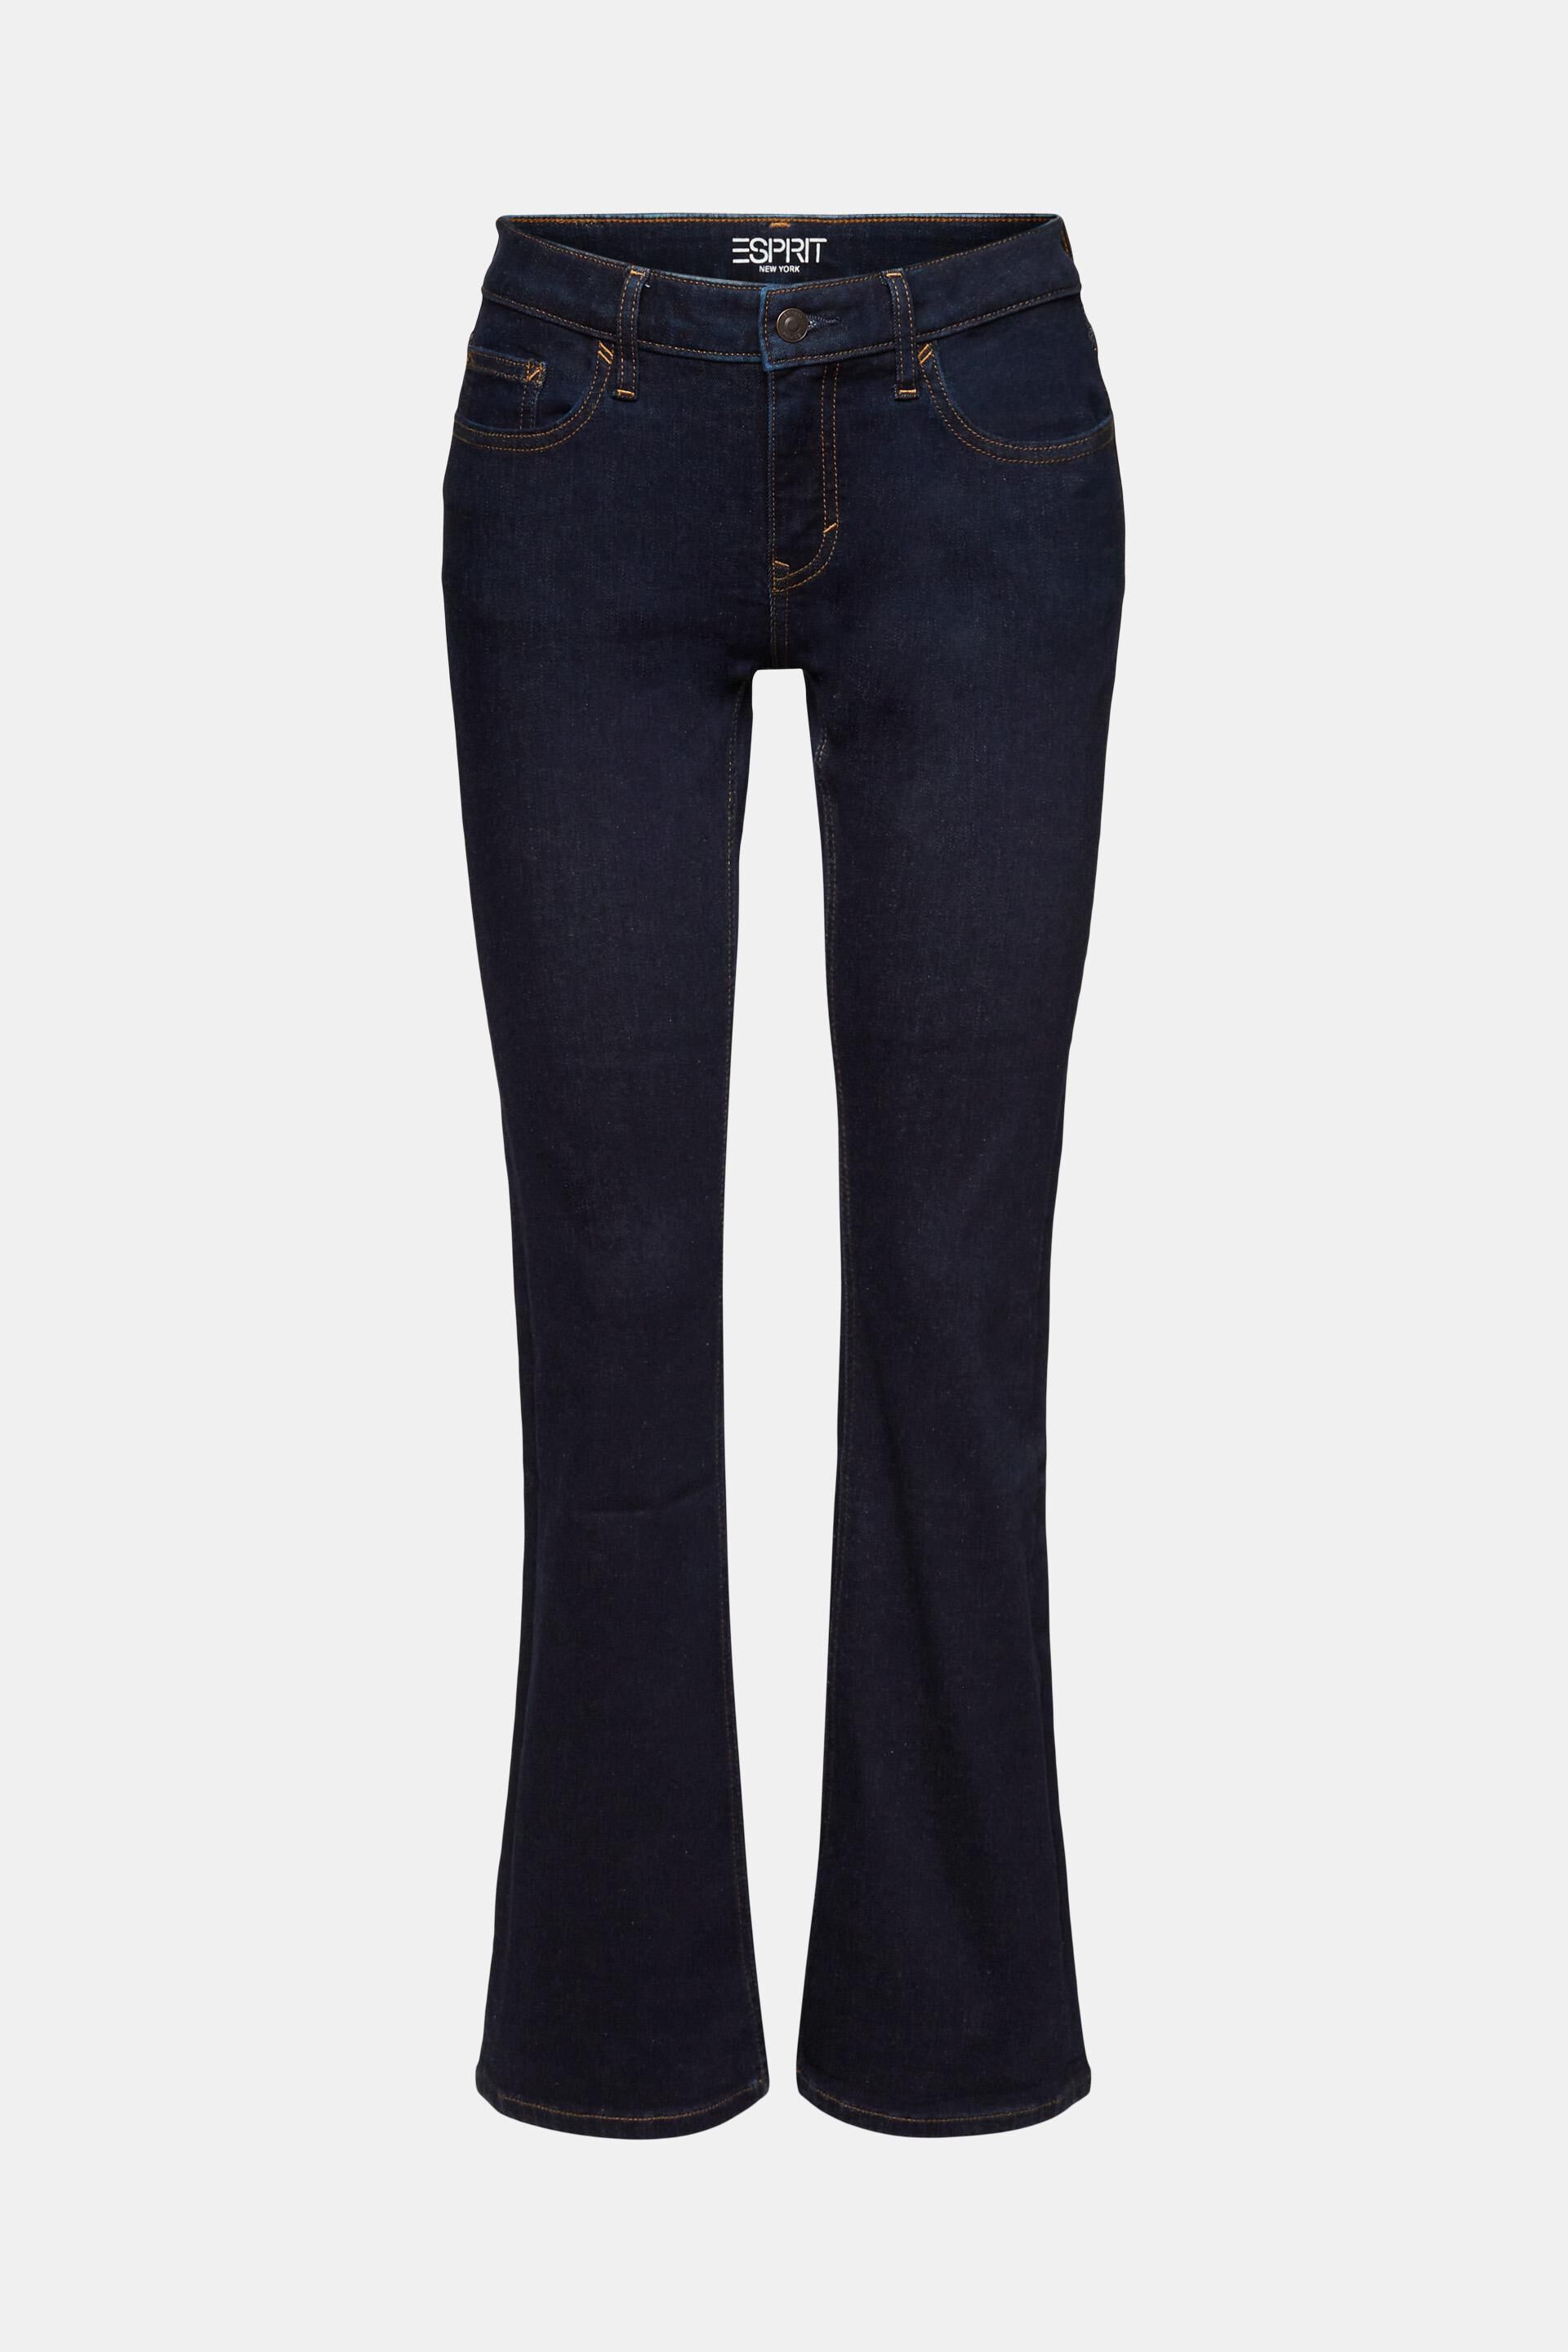 Esprit Damen Recycelt: Bootcut-Jeans mit Leibhöhe mittlerer